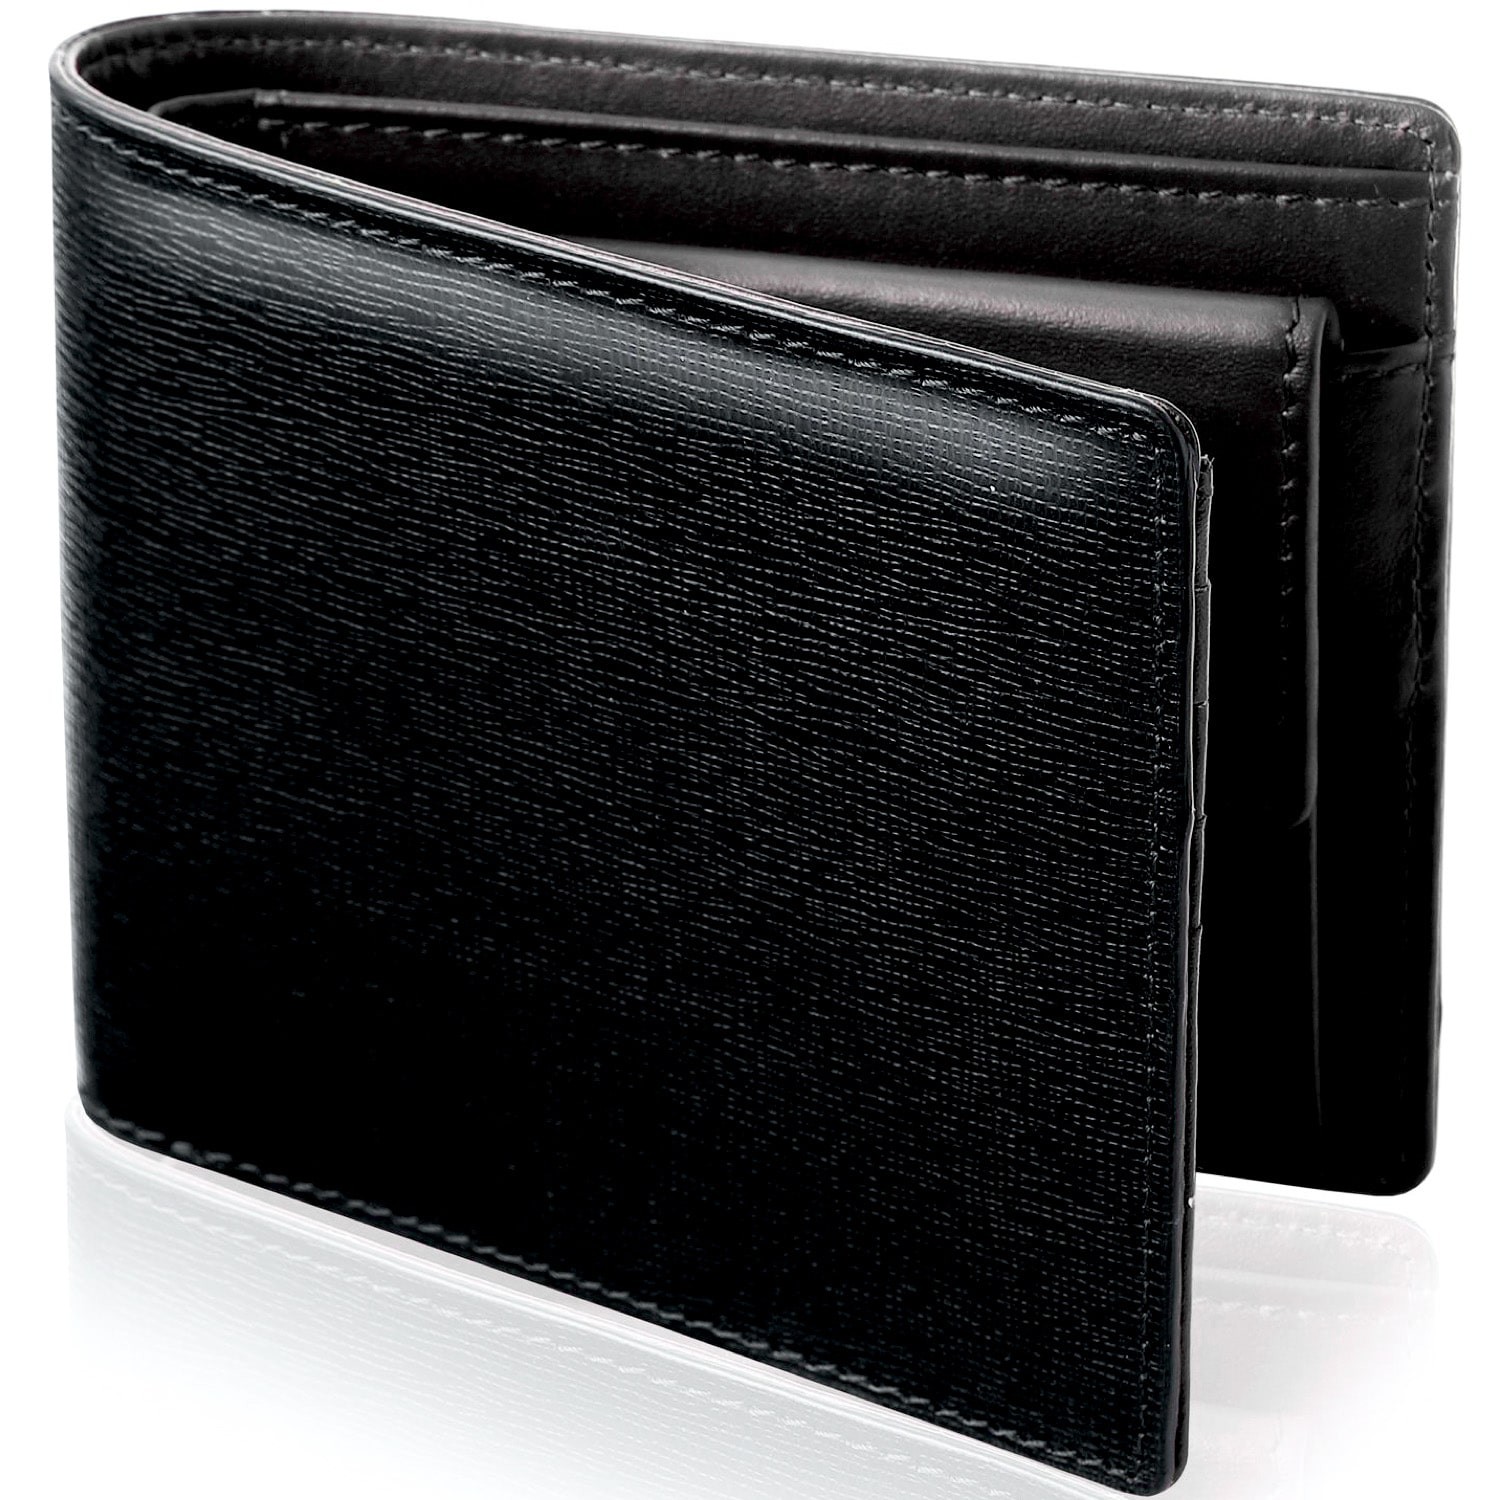 財布 メンズ 二つ折り 本革 革 二つ折り財布 小銭入れあり メンズ財布 イタリアンレザー サフィアーノレザー 紳士用 さいふ 男性 ブランド  AGWL02